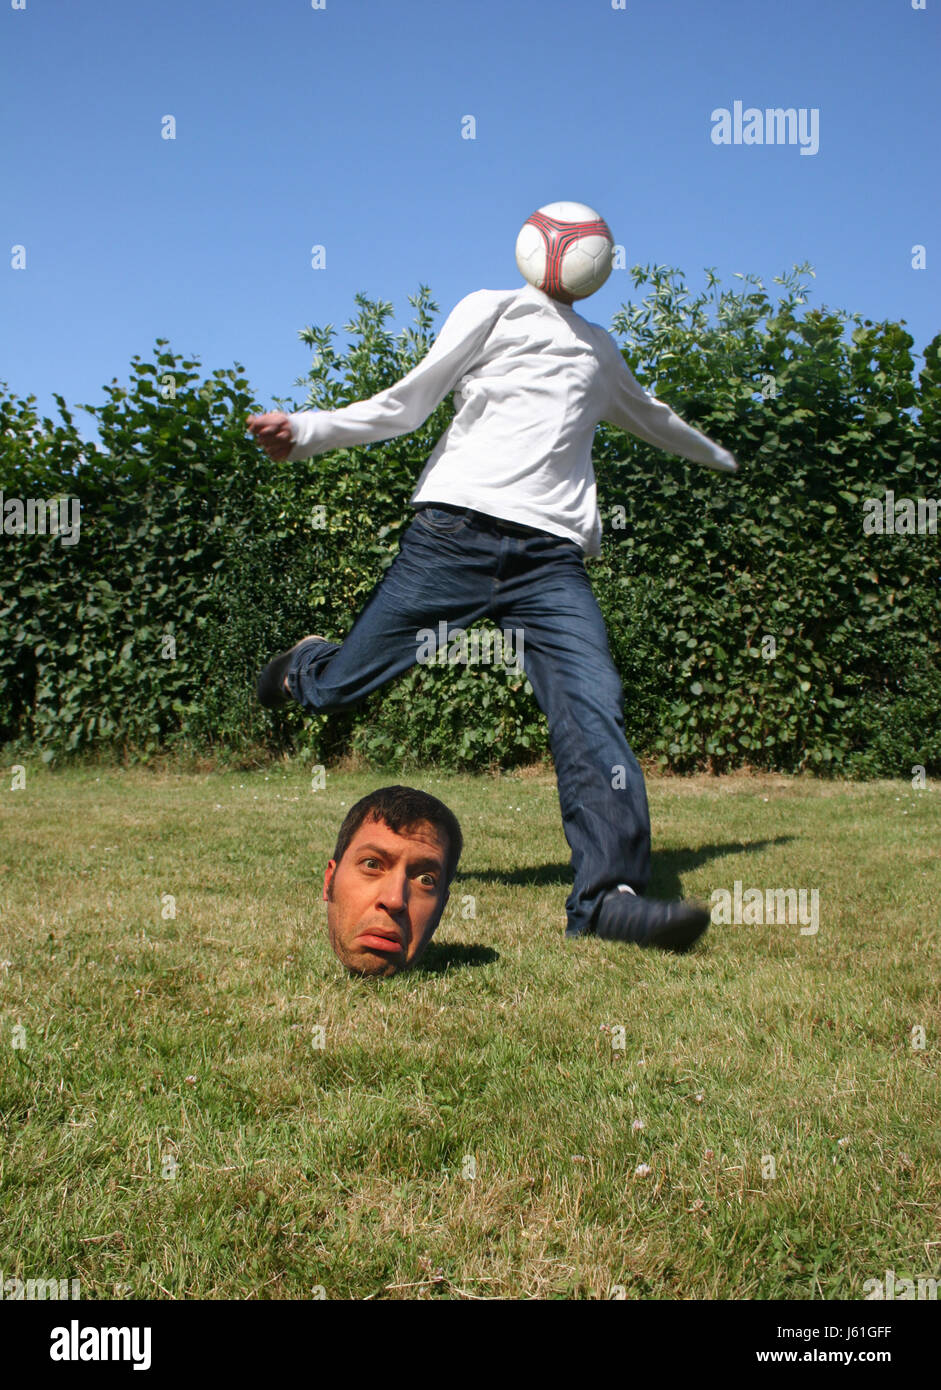 witzige Foto Zusammensetzung Angst lustige Kick Sport Sport Fußball Fußball  Kopf Gesicht Stockfotografie - Alamy